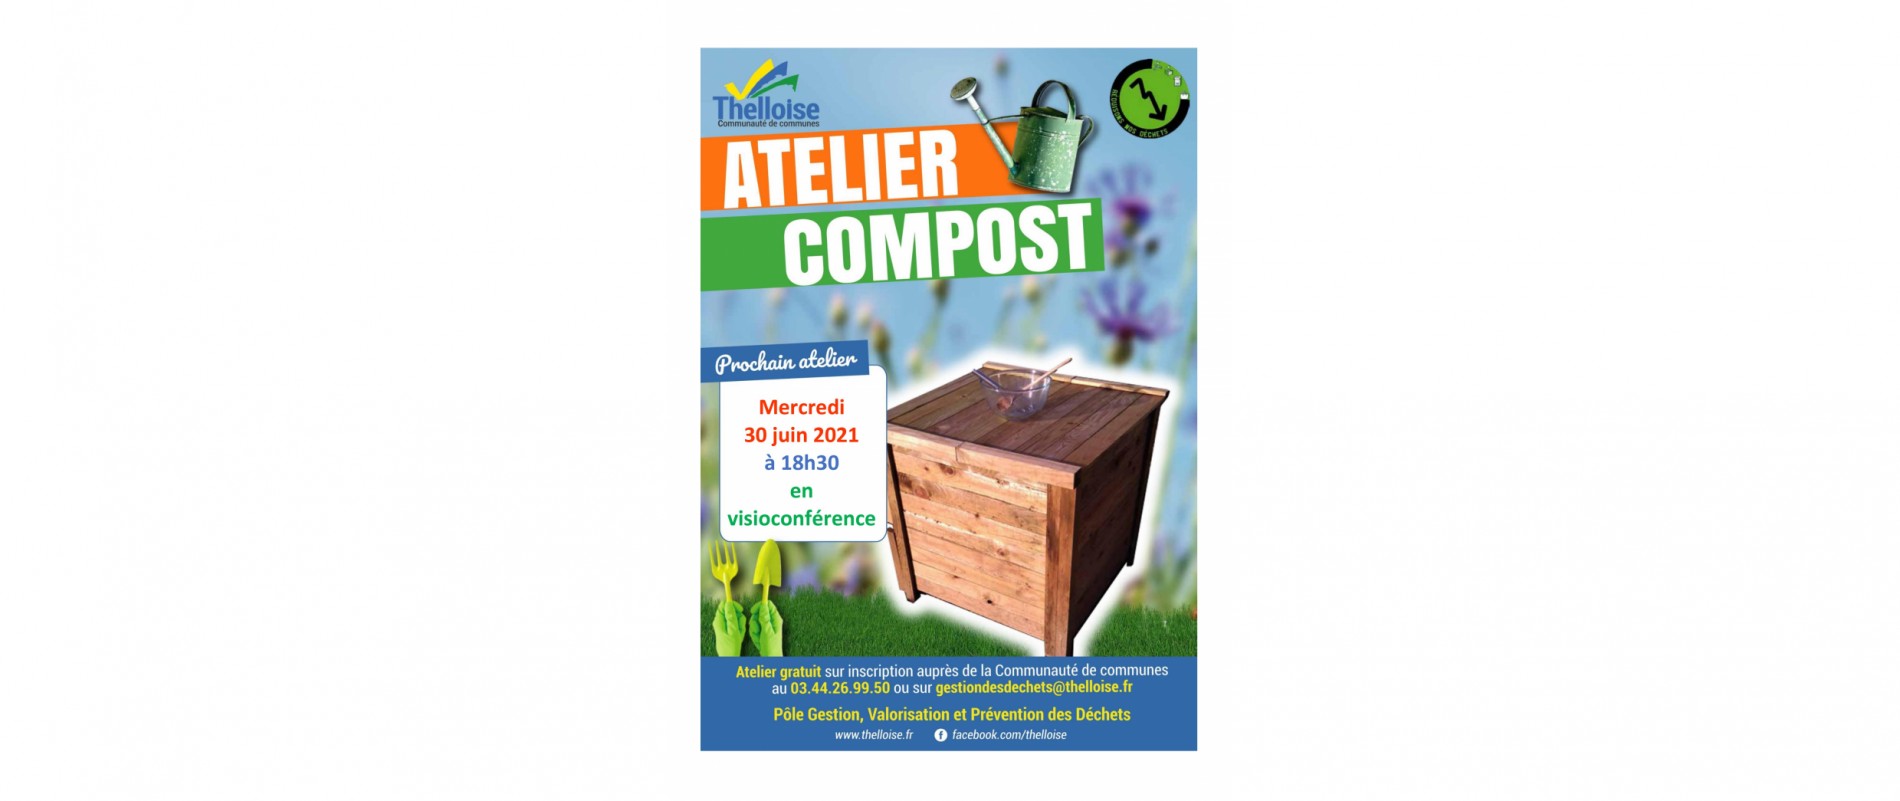 atelier-compost-2021-06-30-visio